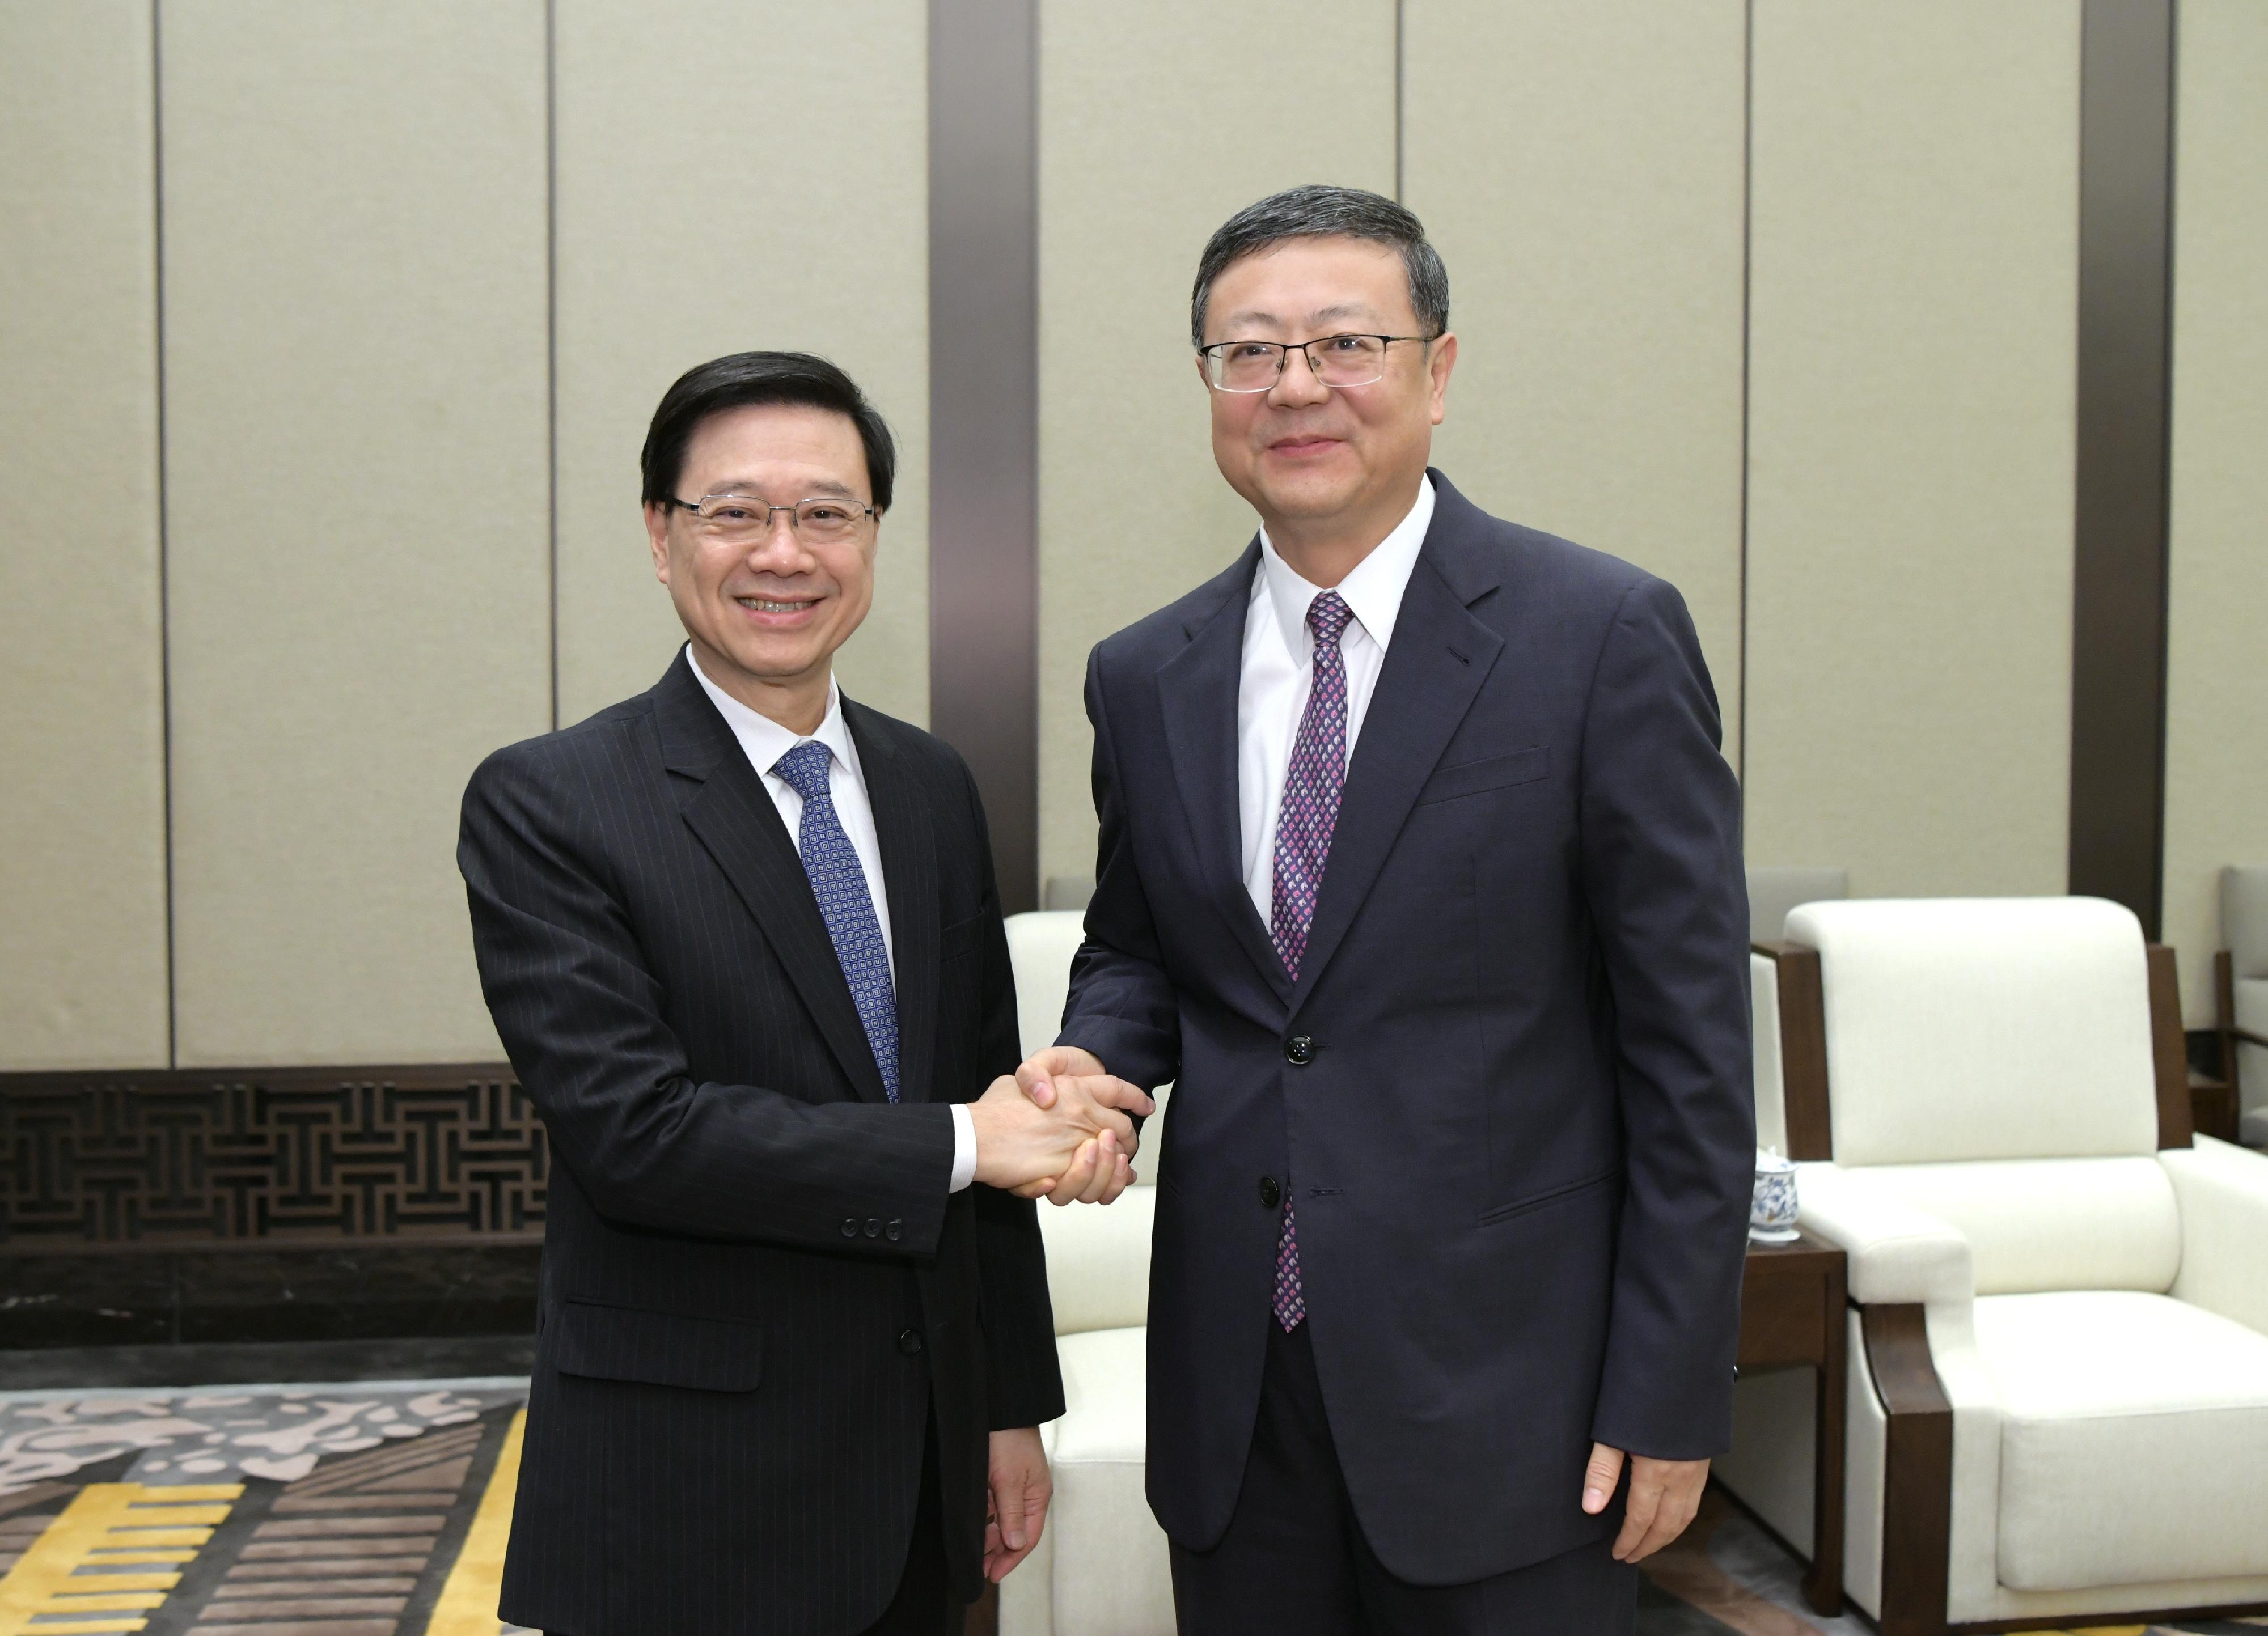 行政長官李家超今日（十一月四日）在上海與上海市委書記陳吉寧及上海市市長龔正會面。圖示李家超（左）與陳吉寧（右）在會面前握手。
